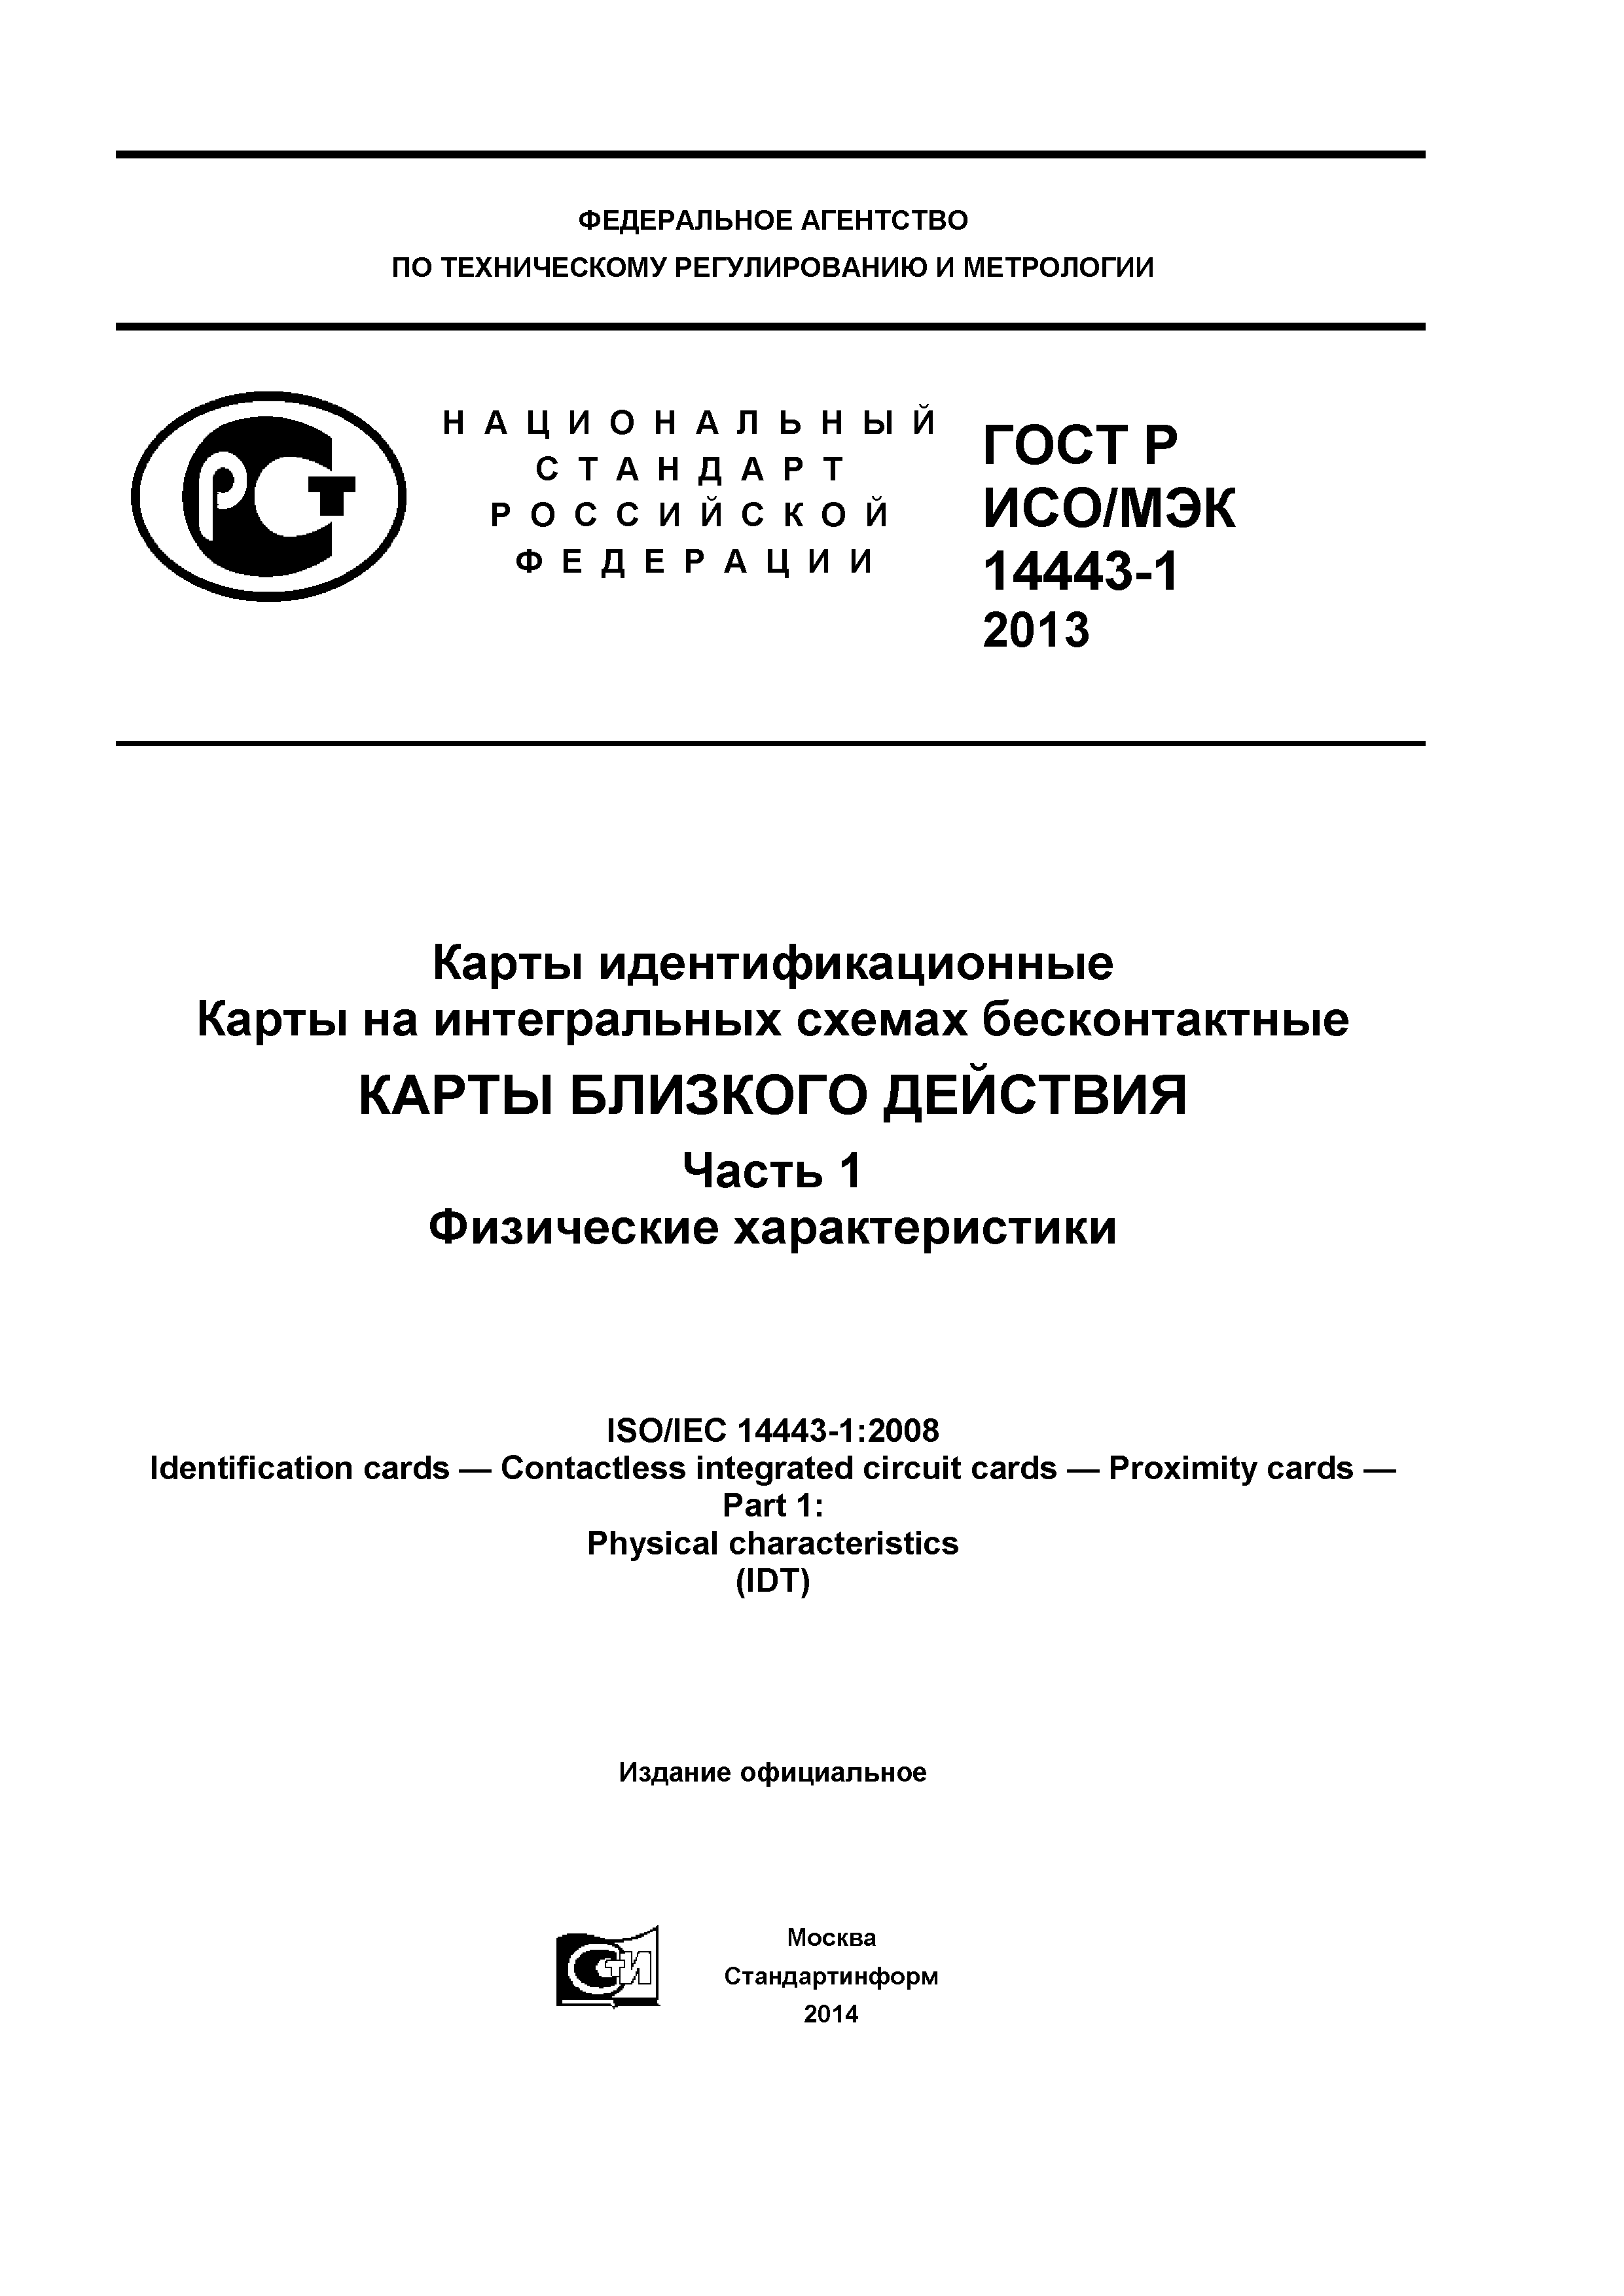 ГОСТ Р ИСО/МЭК 14443-1-2013